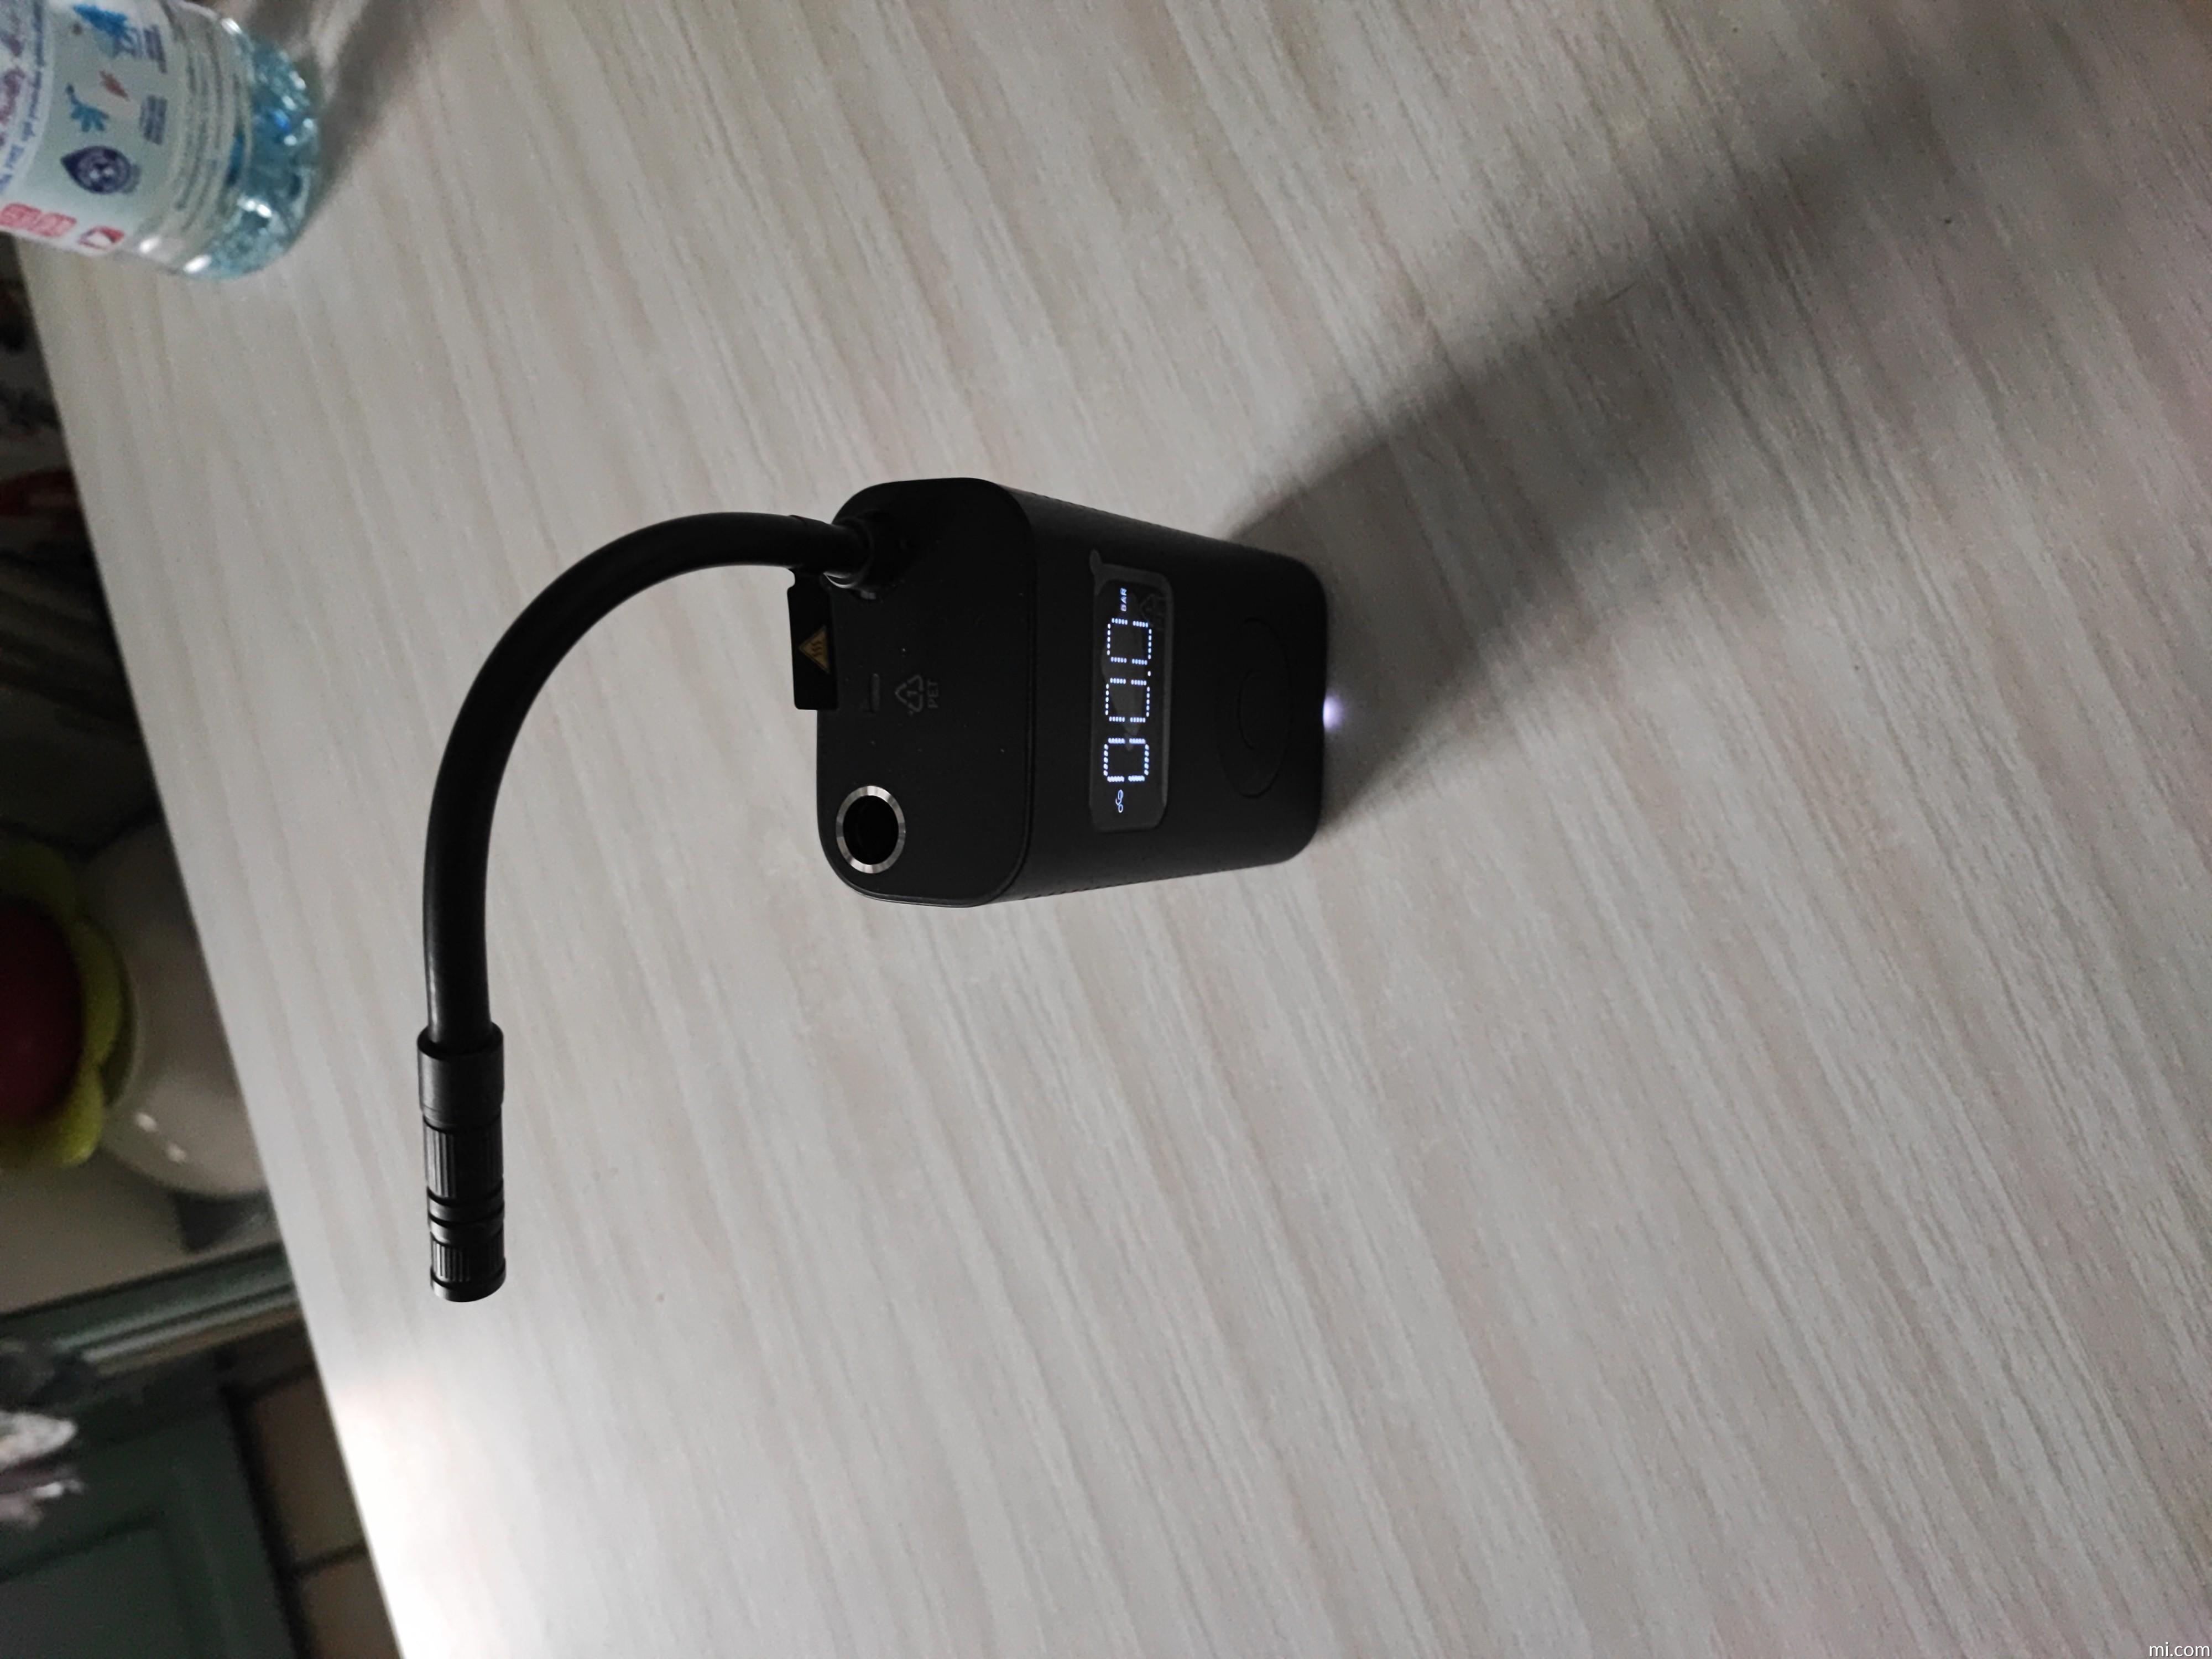 Compresseur Portable Electrique Xiaomi Mi détection digitale de pression -  Chaktech